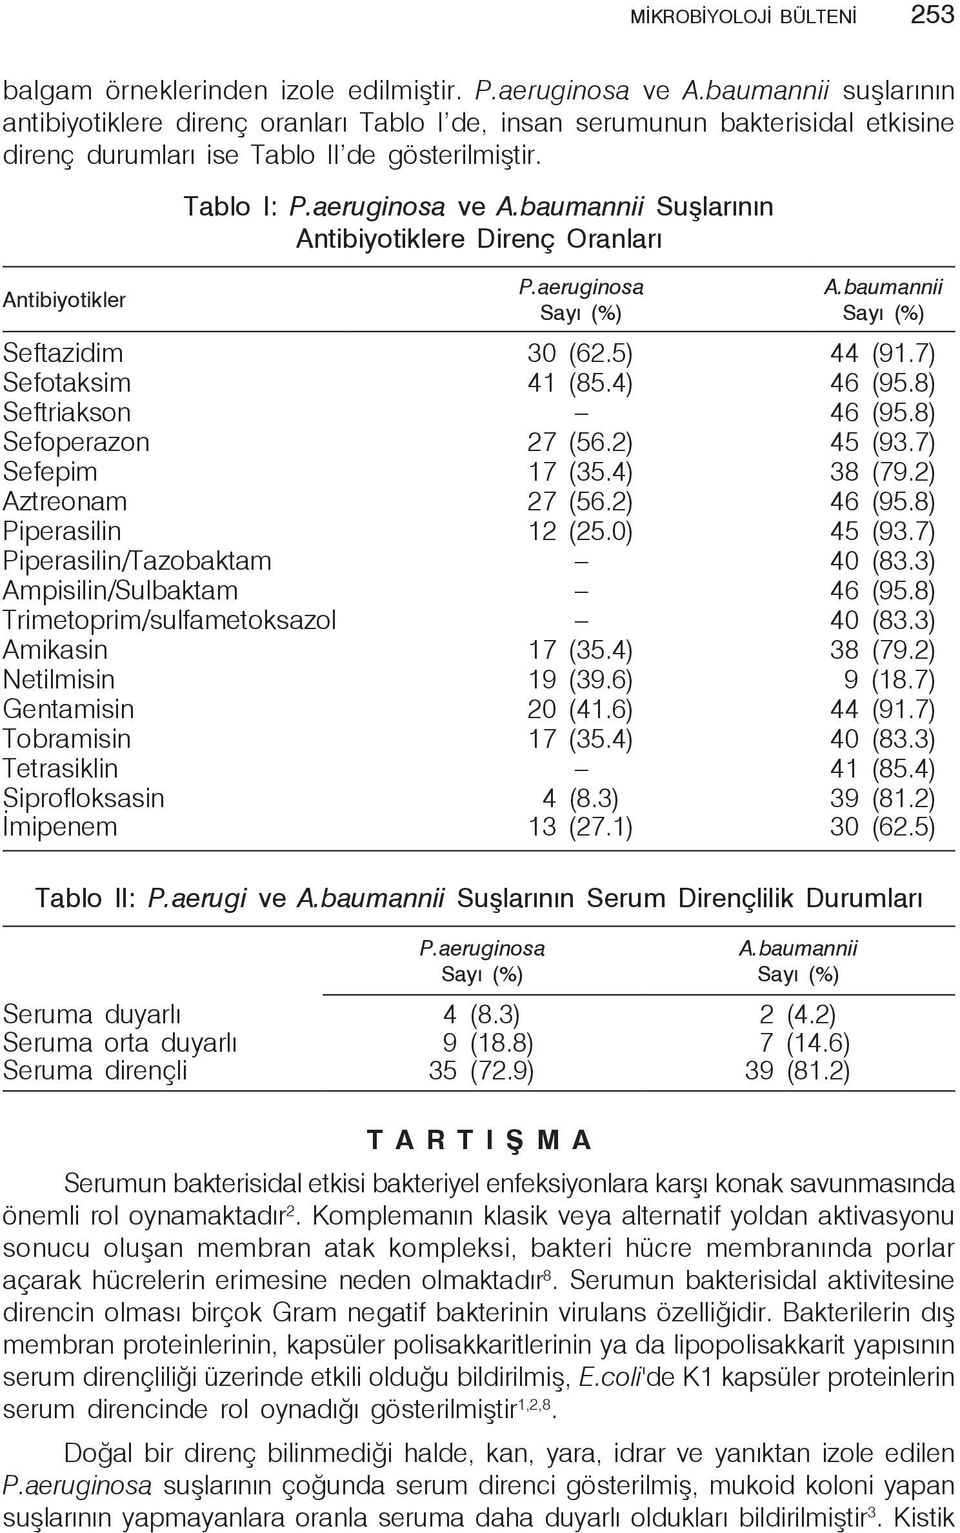 baumannii Suşlarının Antibiyotiklere Direnç Oranları P.aeruginosa A.baumannii Seftazidim 30 (62.5) 44 (91.7) Sefotaksim 41 (85.4) 46 (95.8) Seftriakson 46 (95.8) Sefoperazon 27 (56.2) 45 (93.